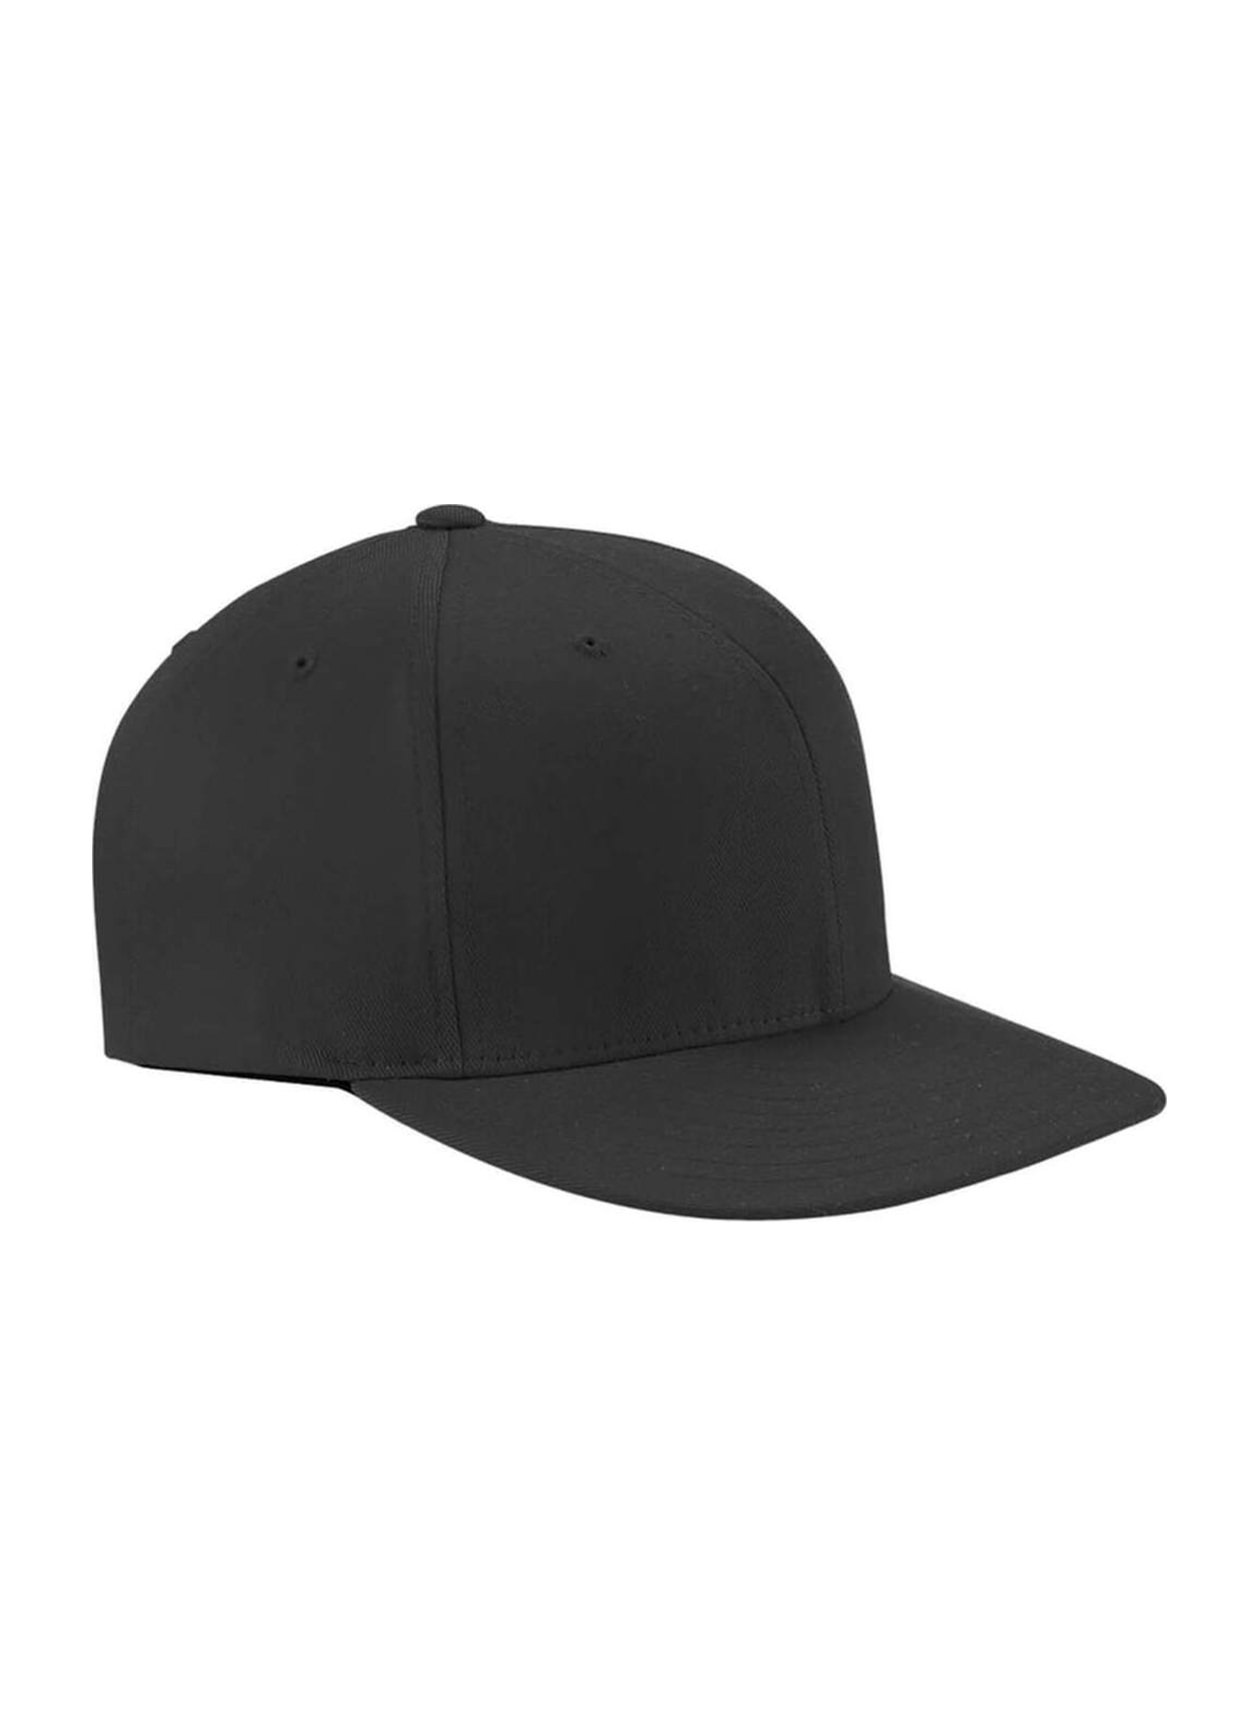 Hat with Shape On-Field | Flexfit Pro Flexfit Twill Wooly Flat Bill Baseball